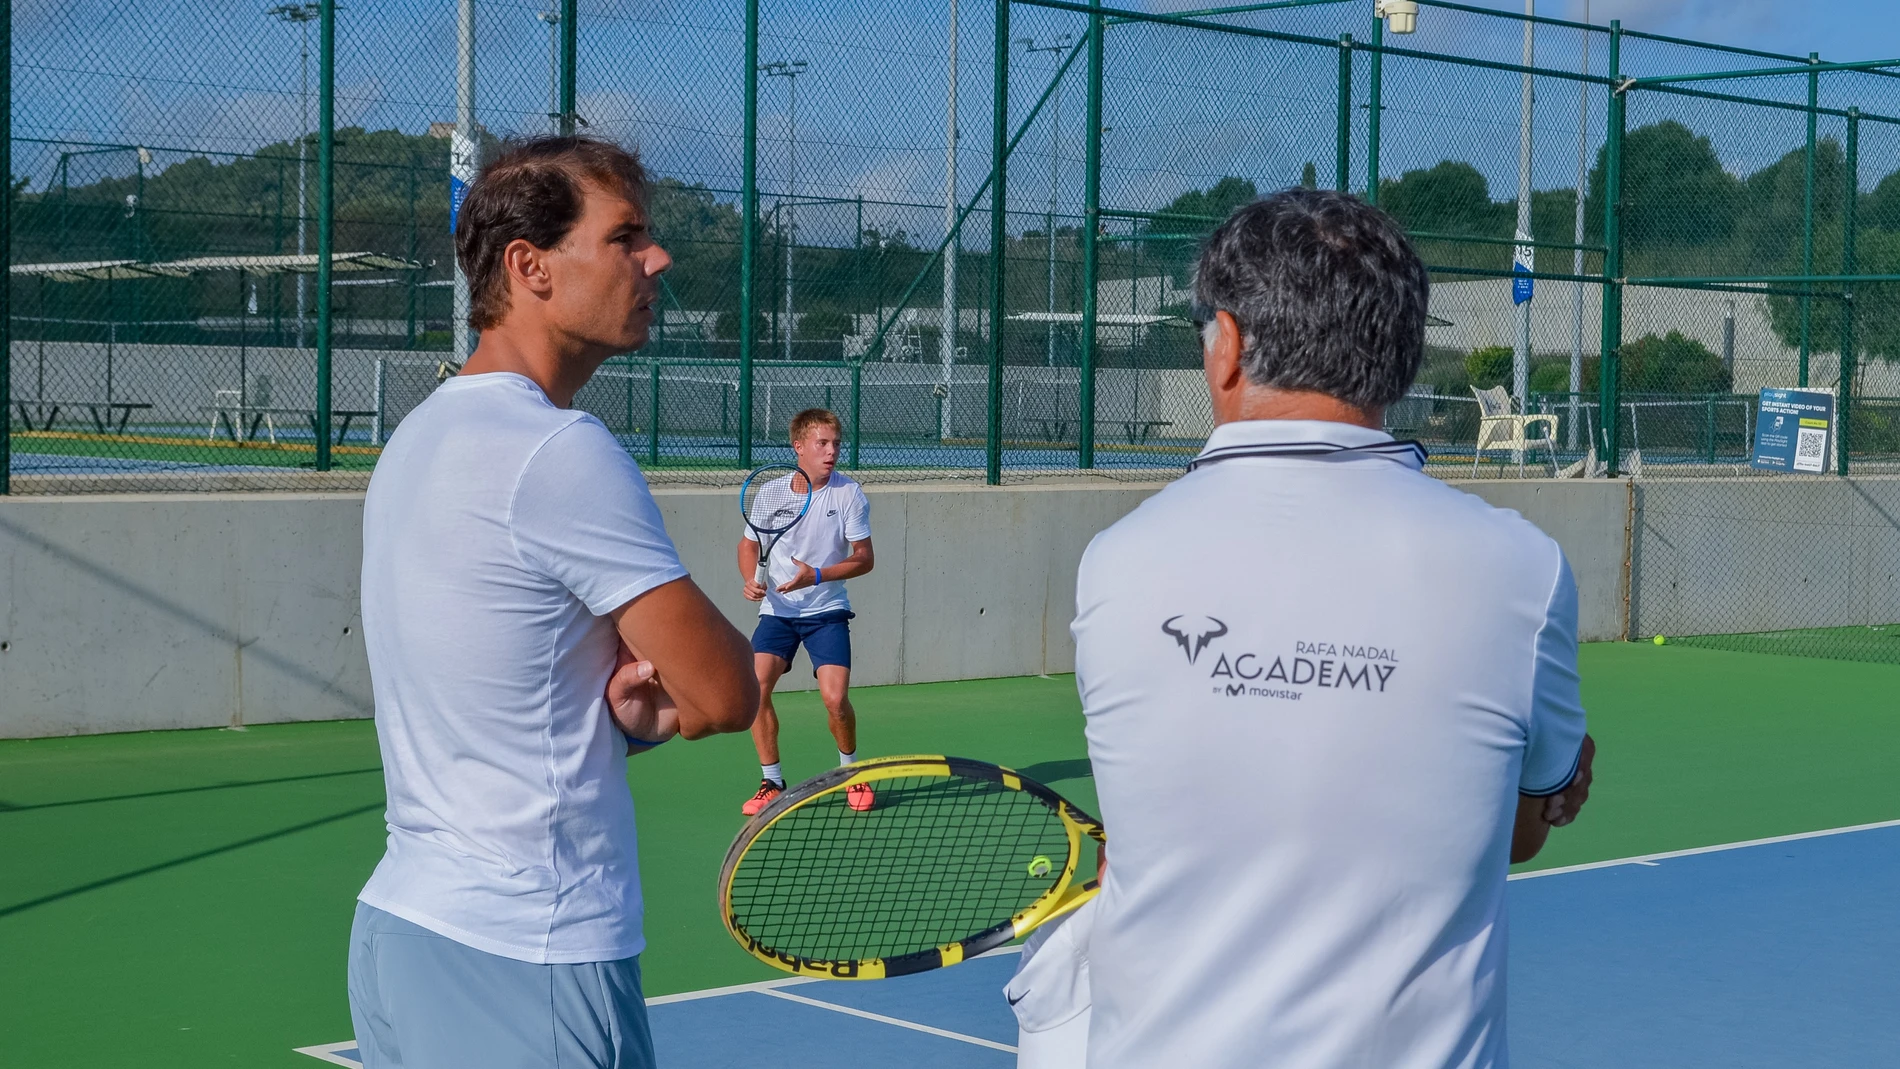 Tenis.- Rafa Nadal visita los entrenamientos de los jugadores de su Academia en Manacor